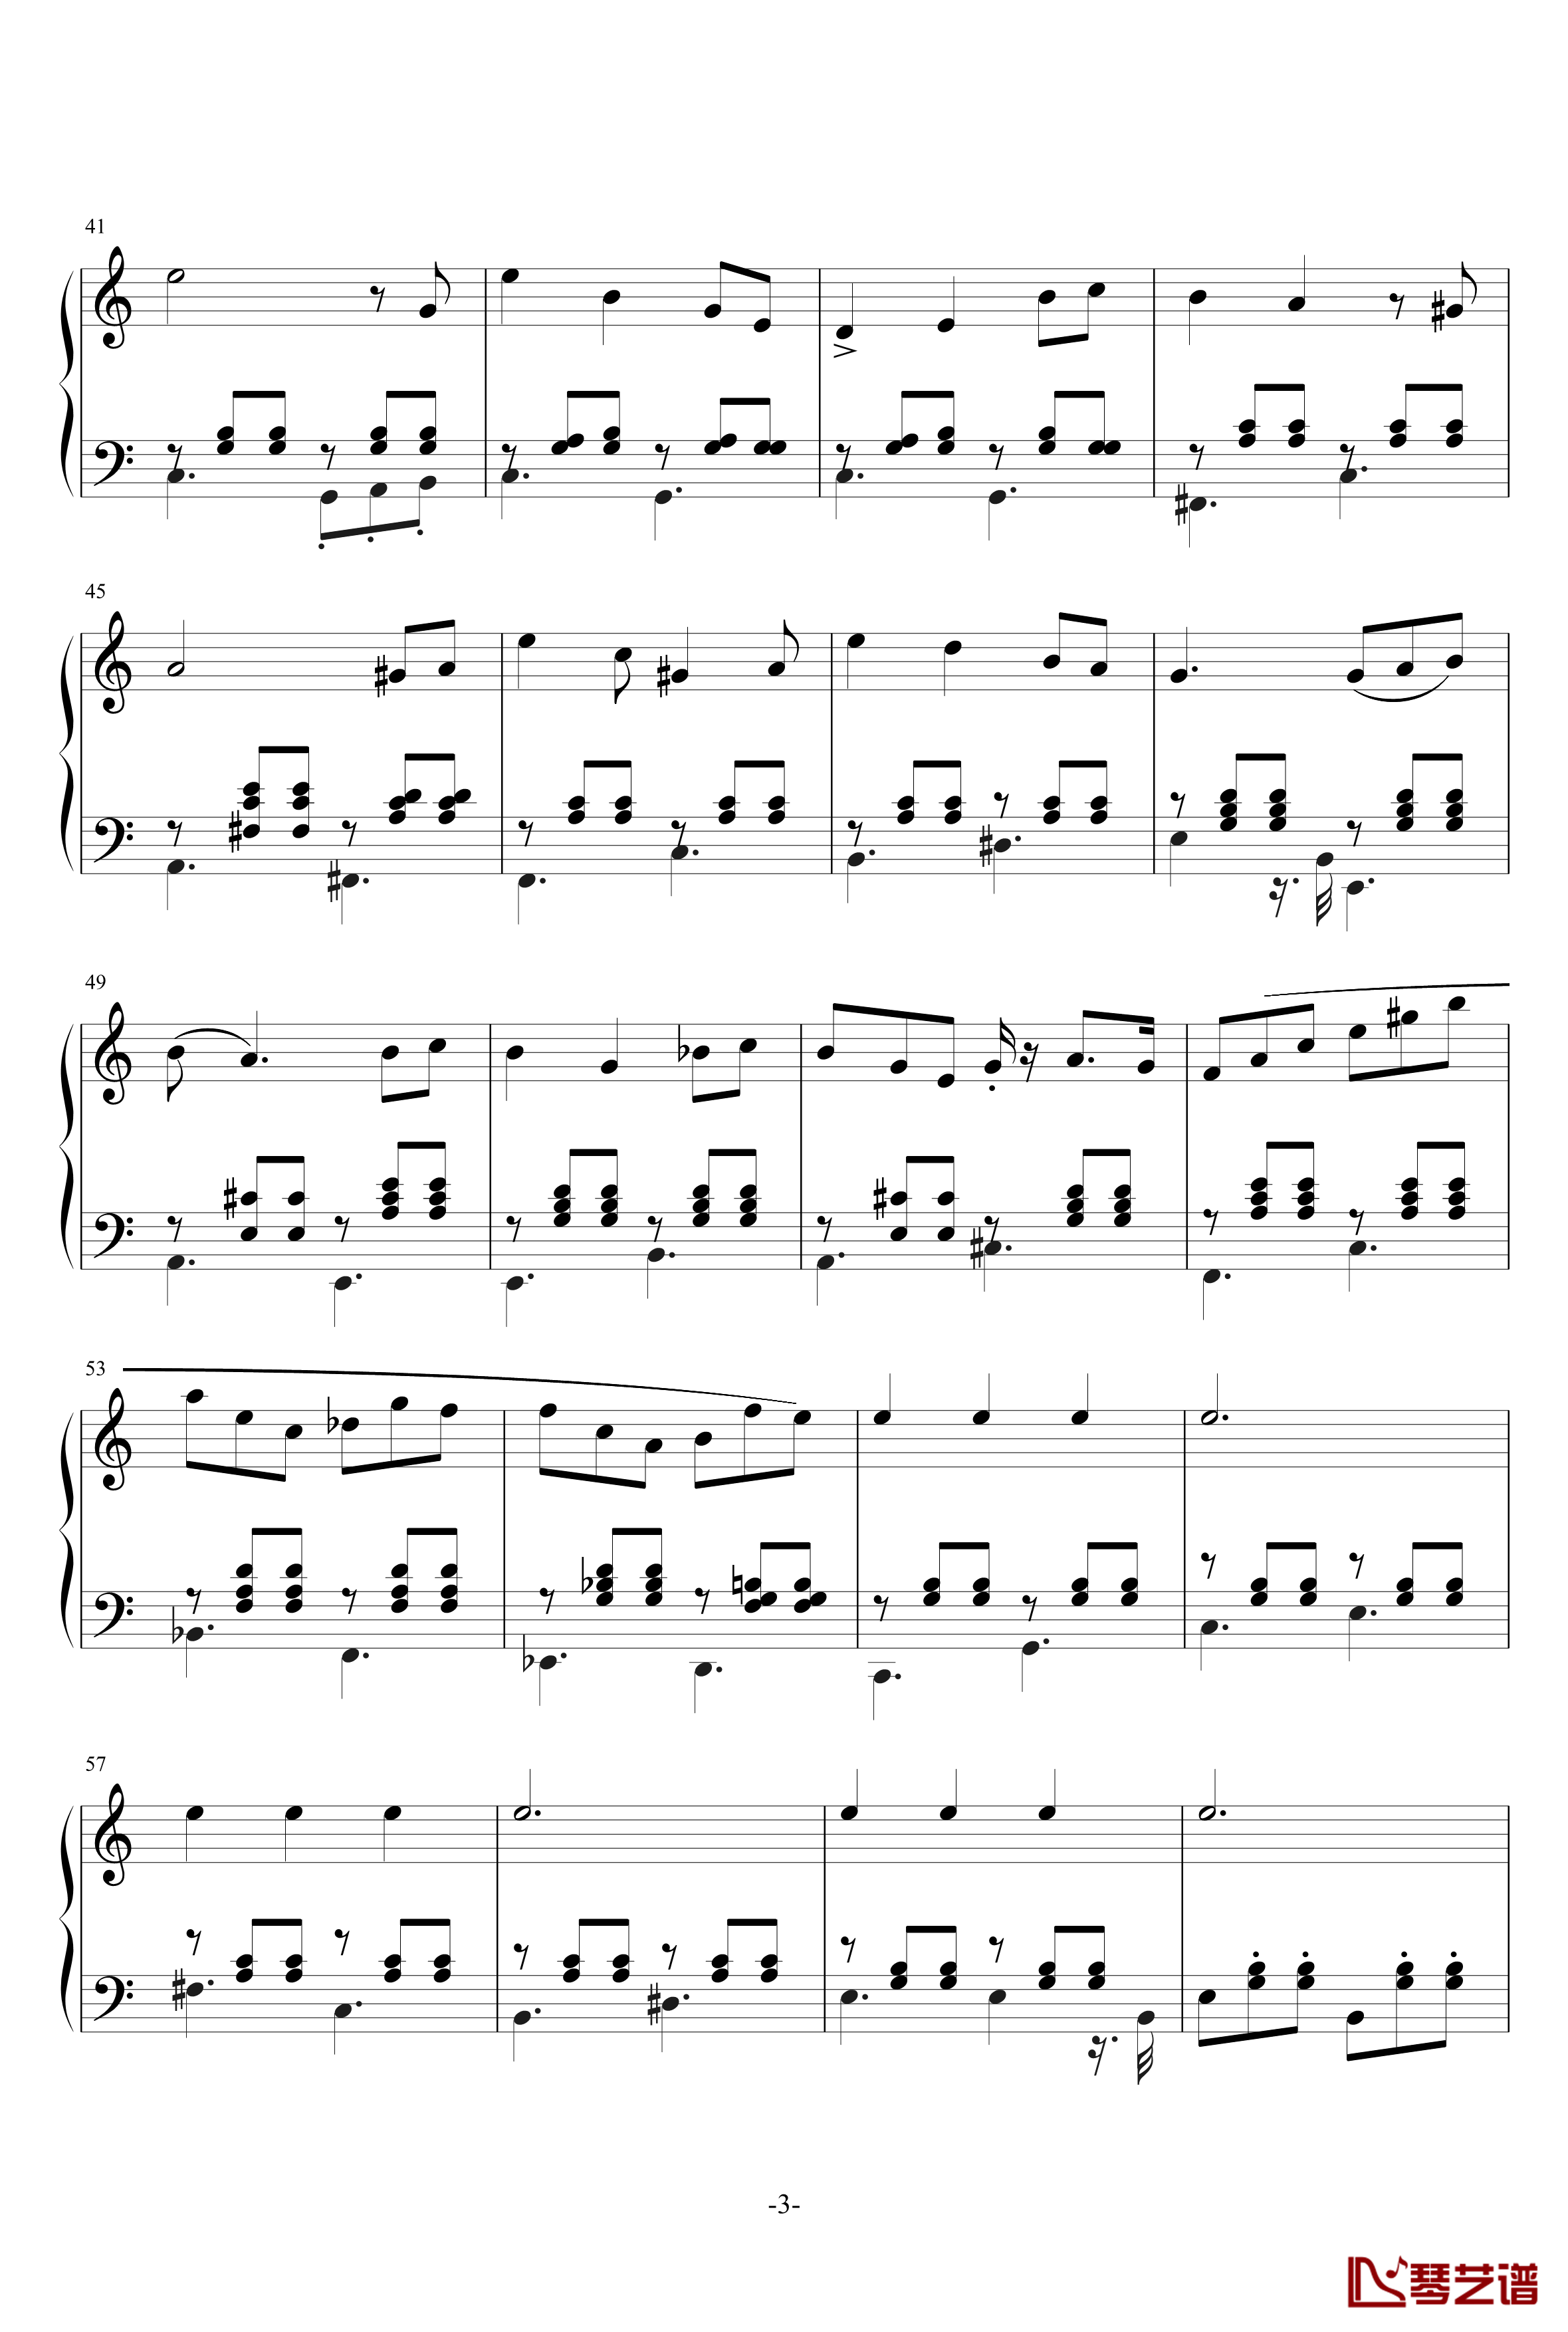 旋转木马上的小丑钢琴谱-DoubleE No4-尬哥3